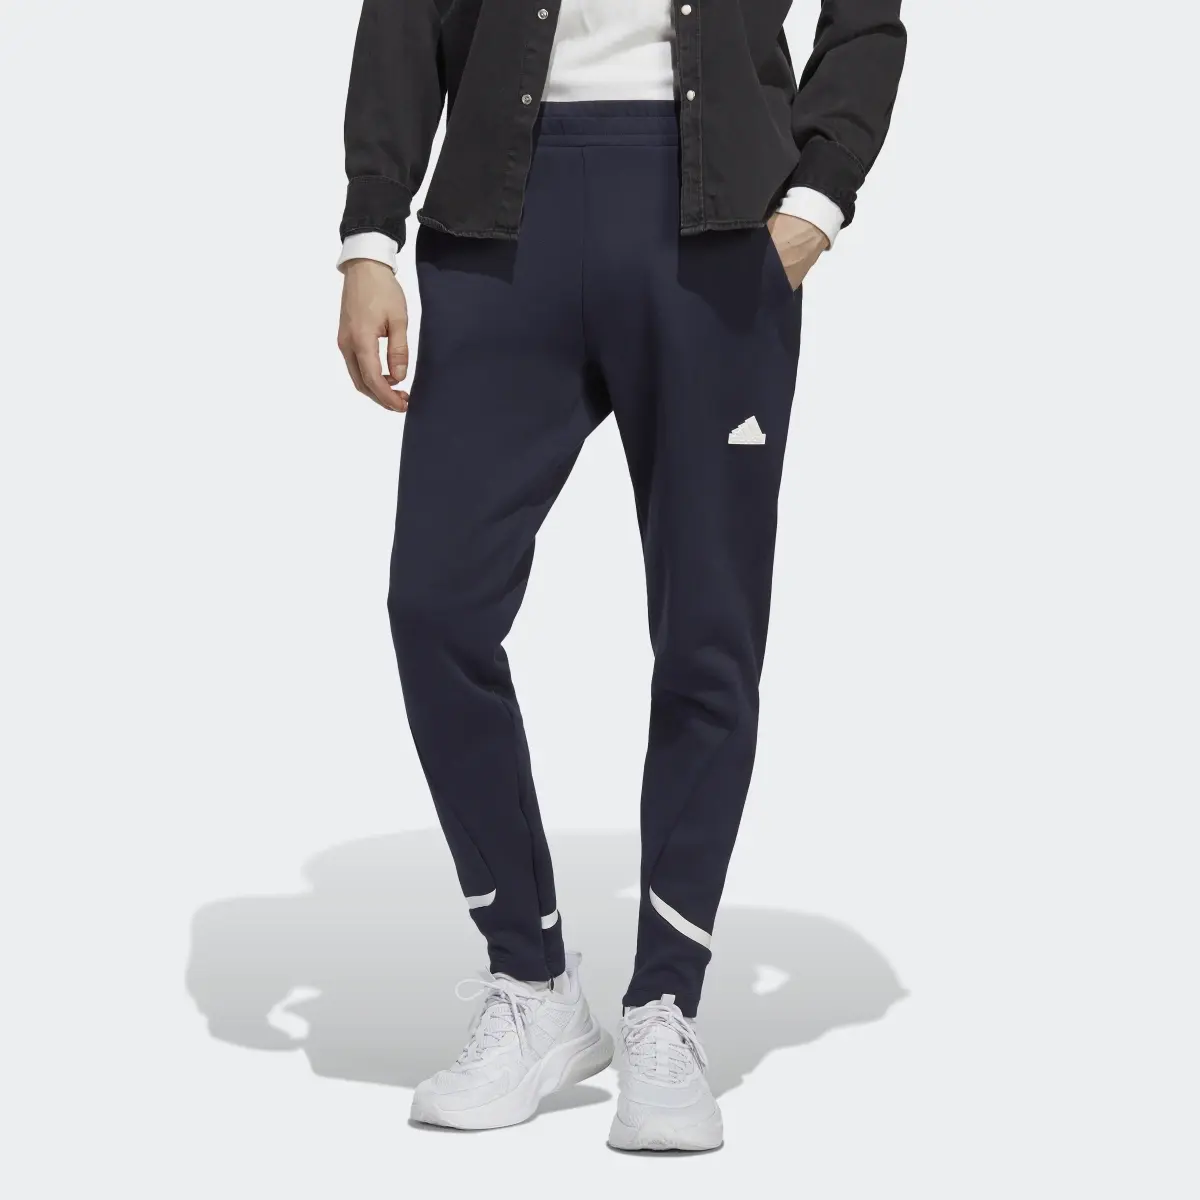 Adidas Pantalón Designed for Gameday. 1